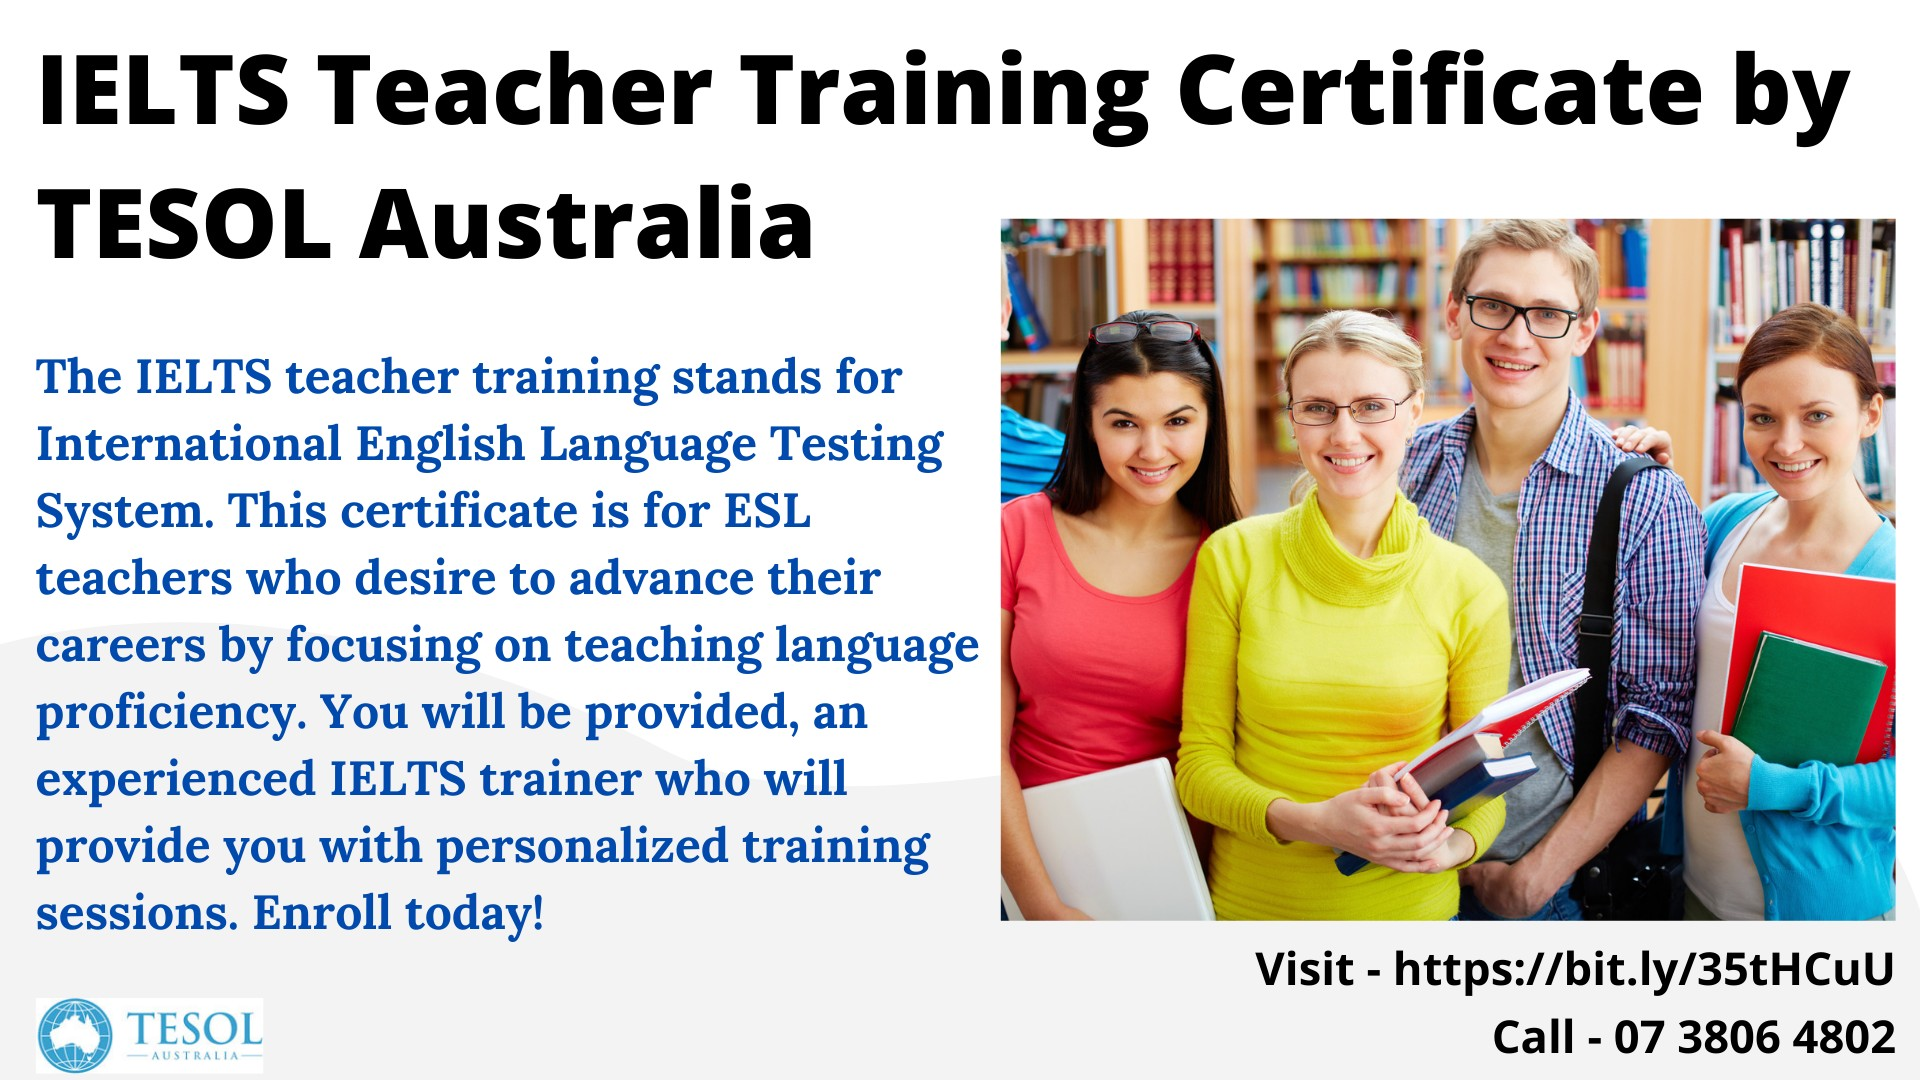 IELTS Teacher Training Certificate by TESOL Australia